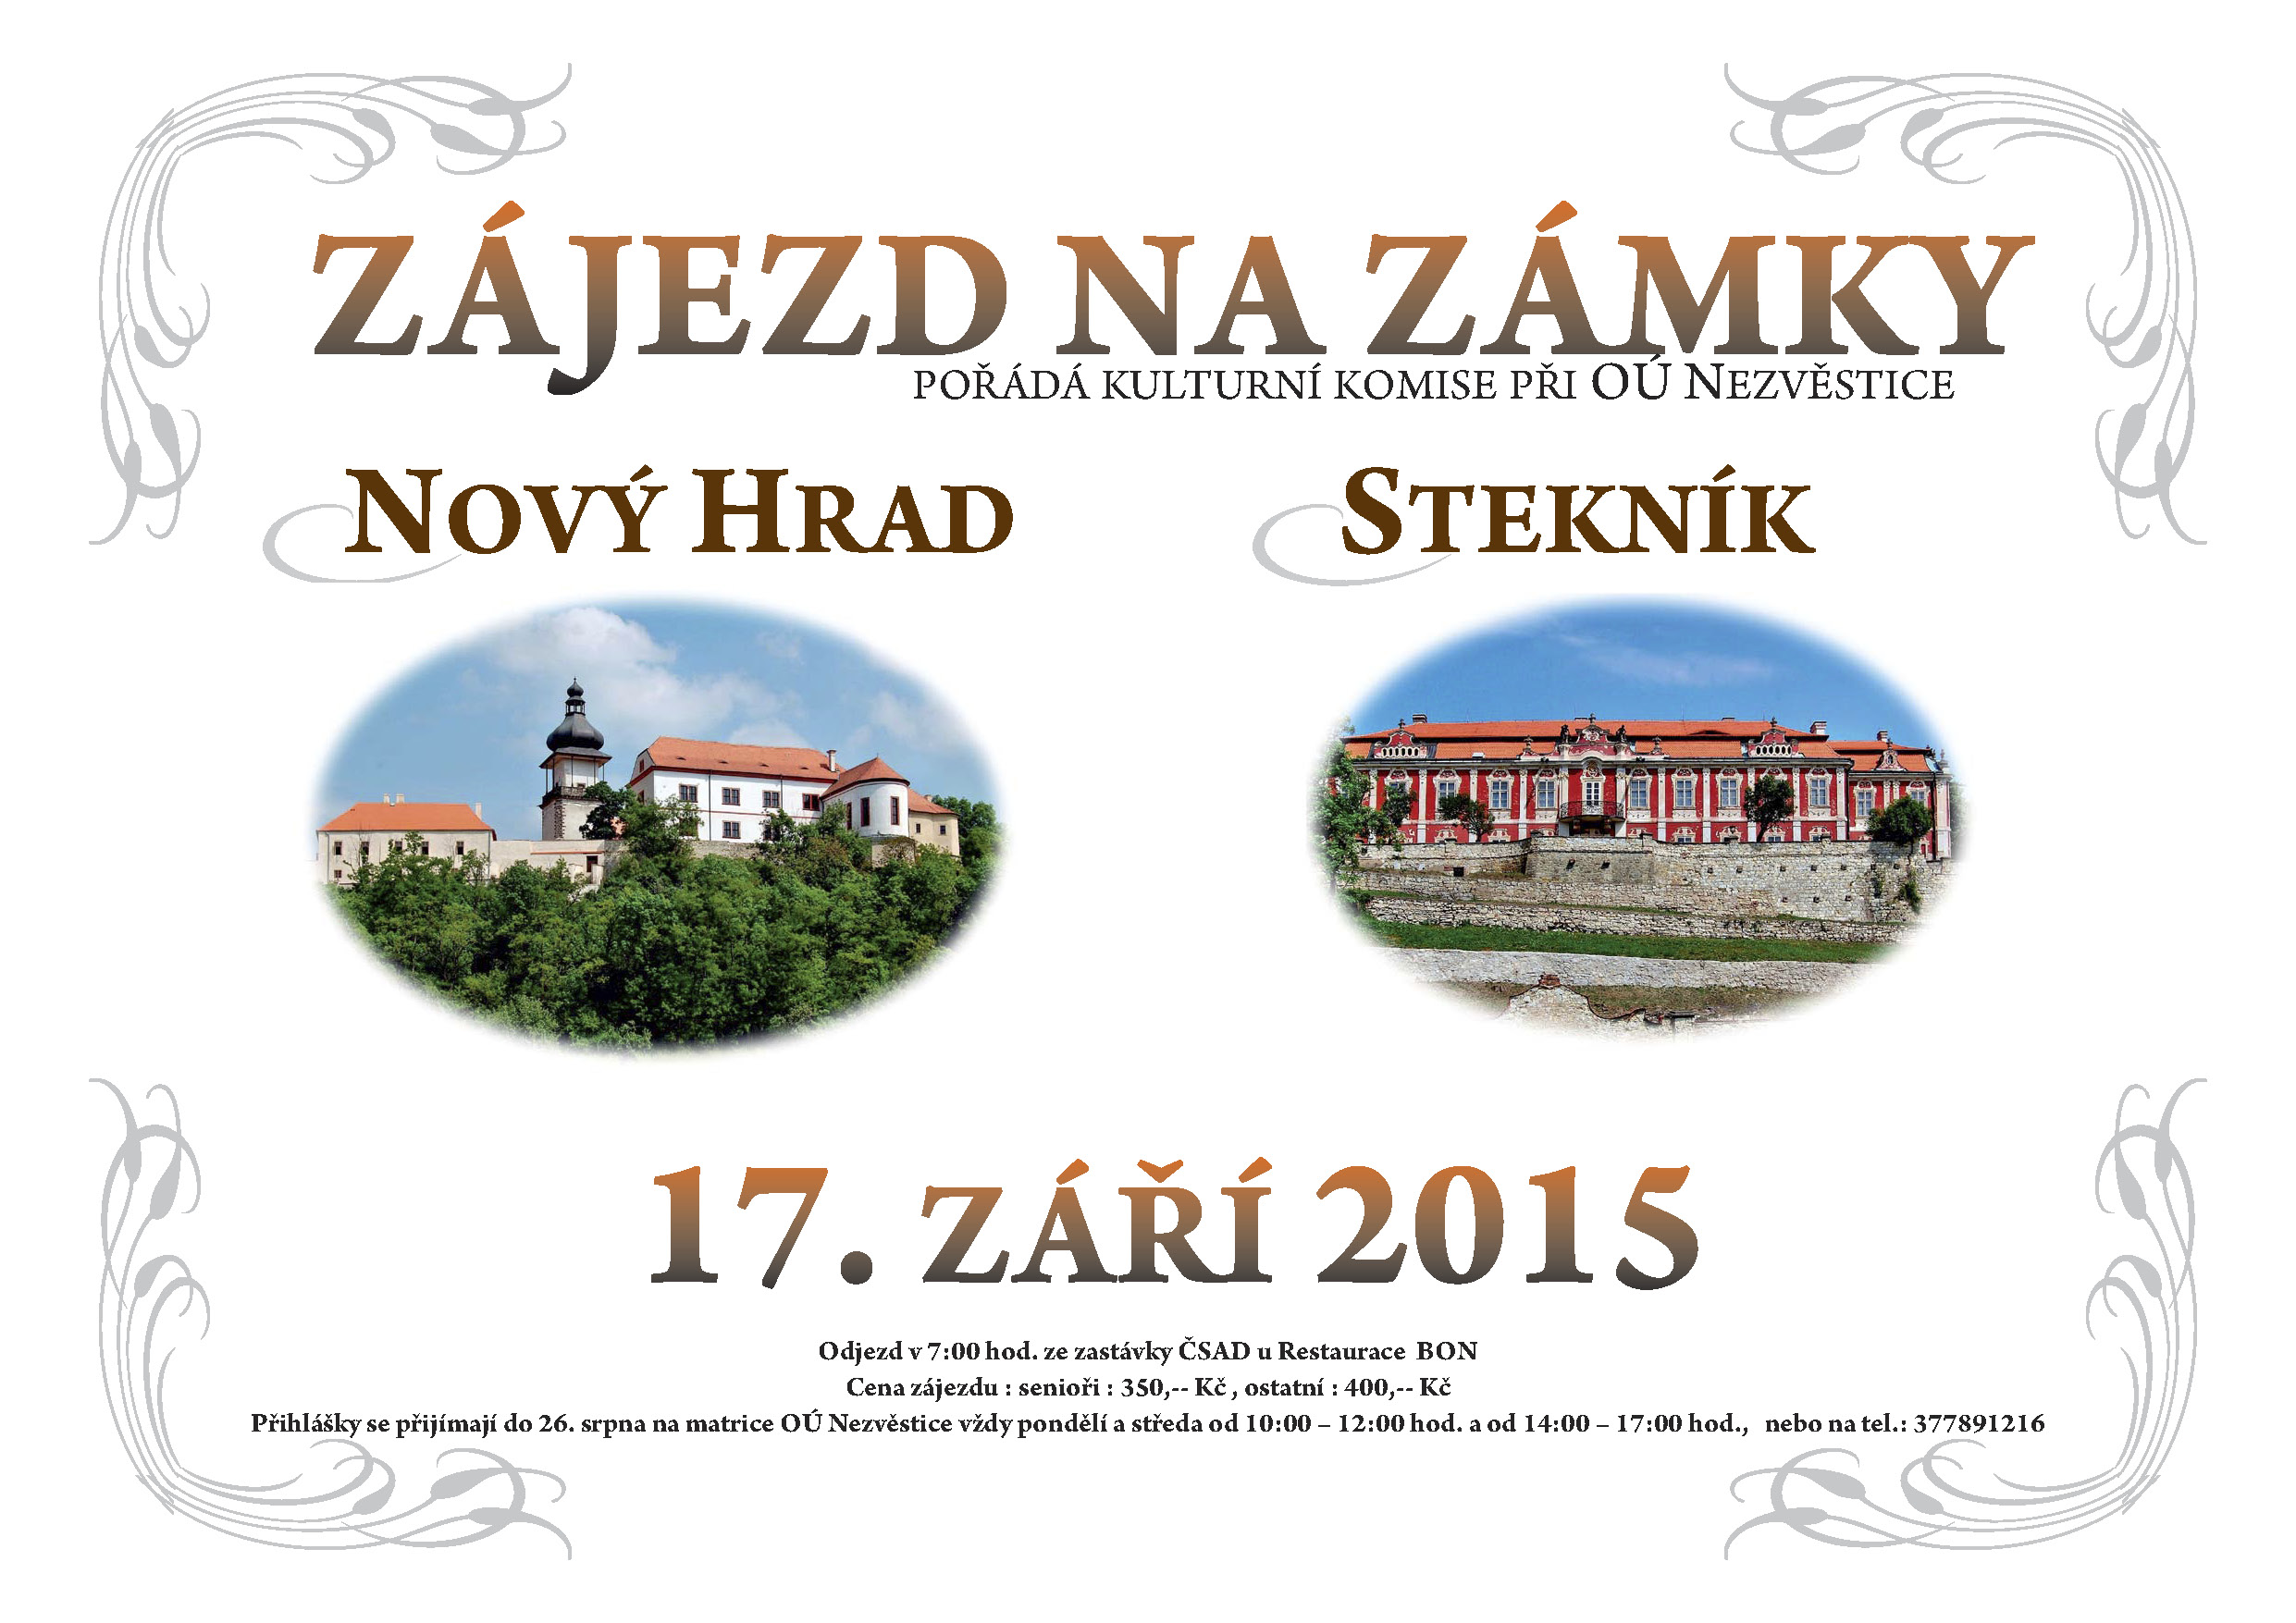 Zájezd na zámky Nový Hrad a Stekník – 17.9.2015